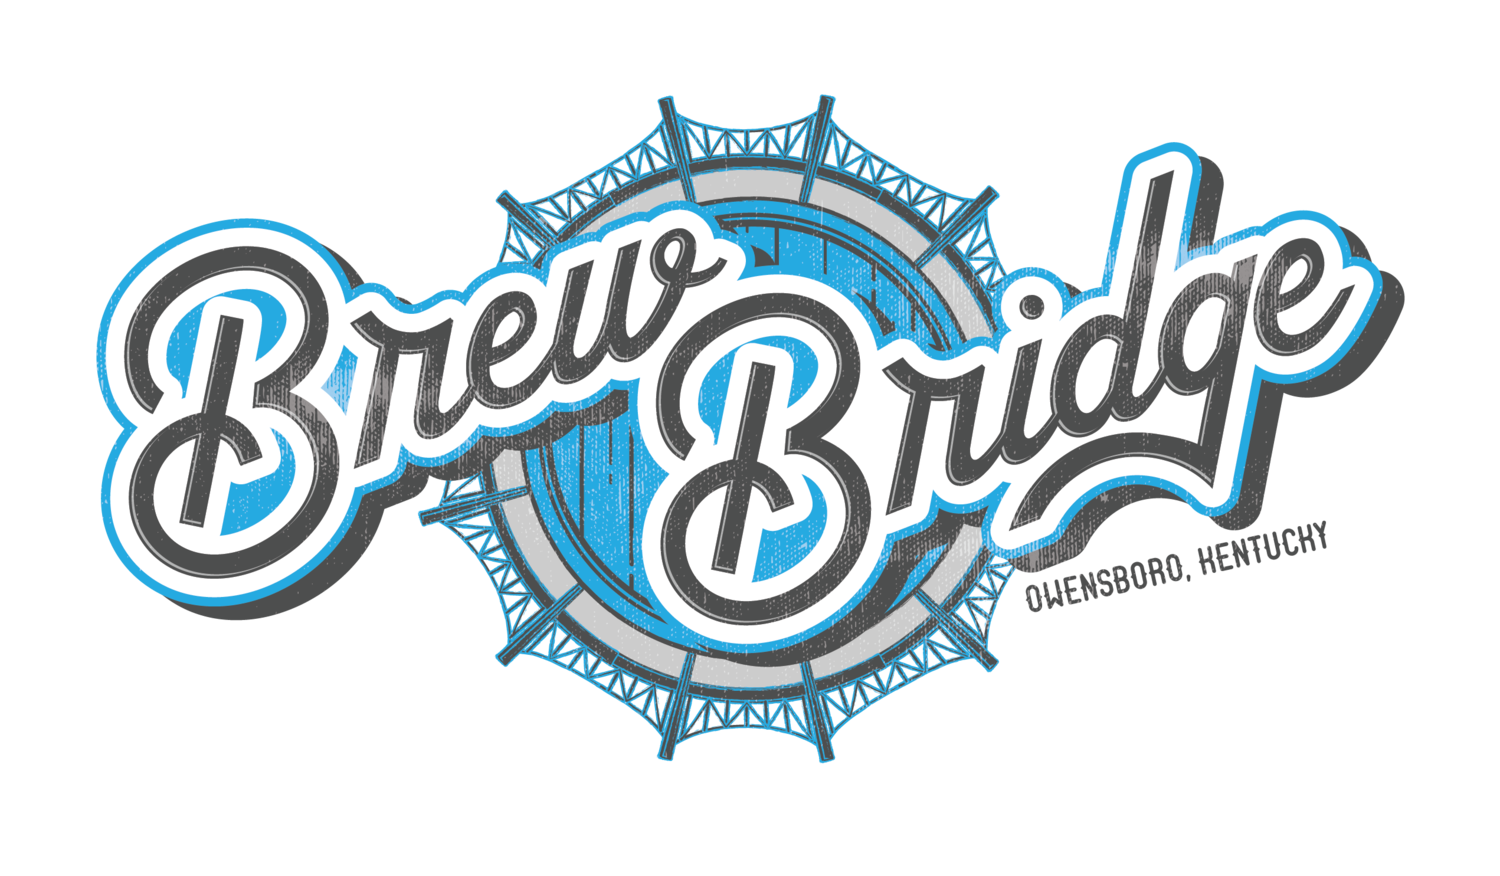 The Brew Bridge